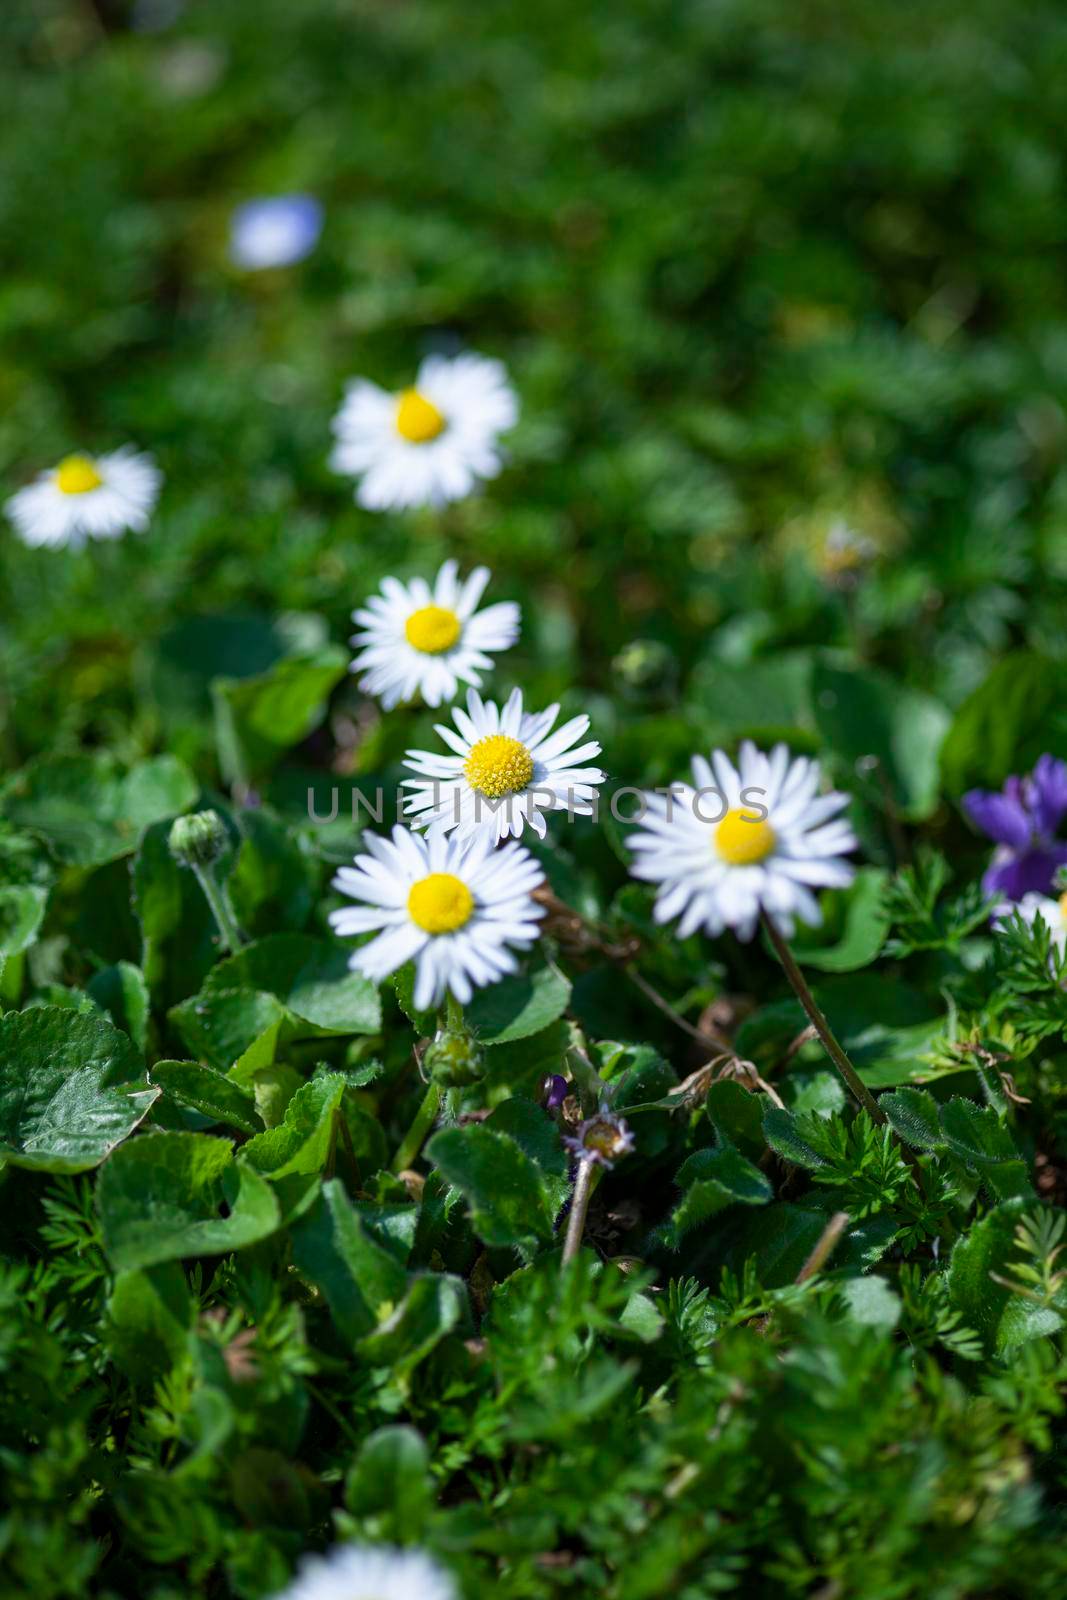 Daisy flower in garden 6 by pippocarlot